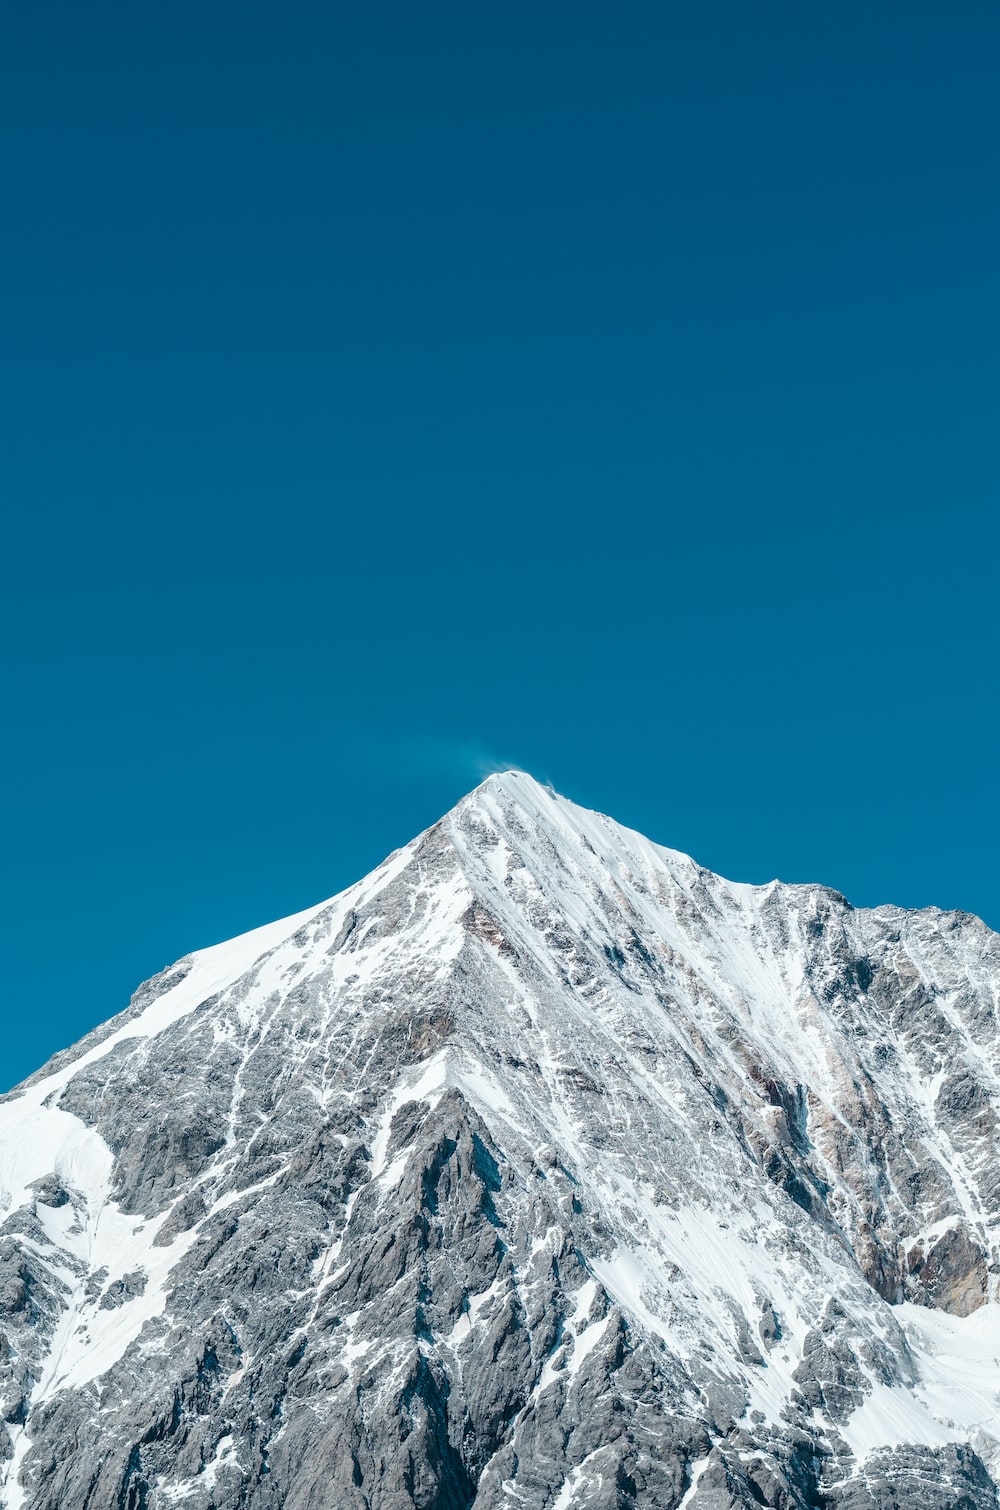 Mountain Summit Wallpapers